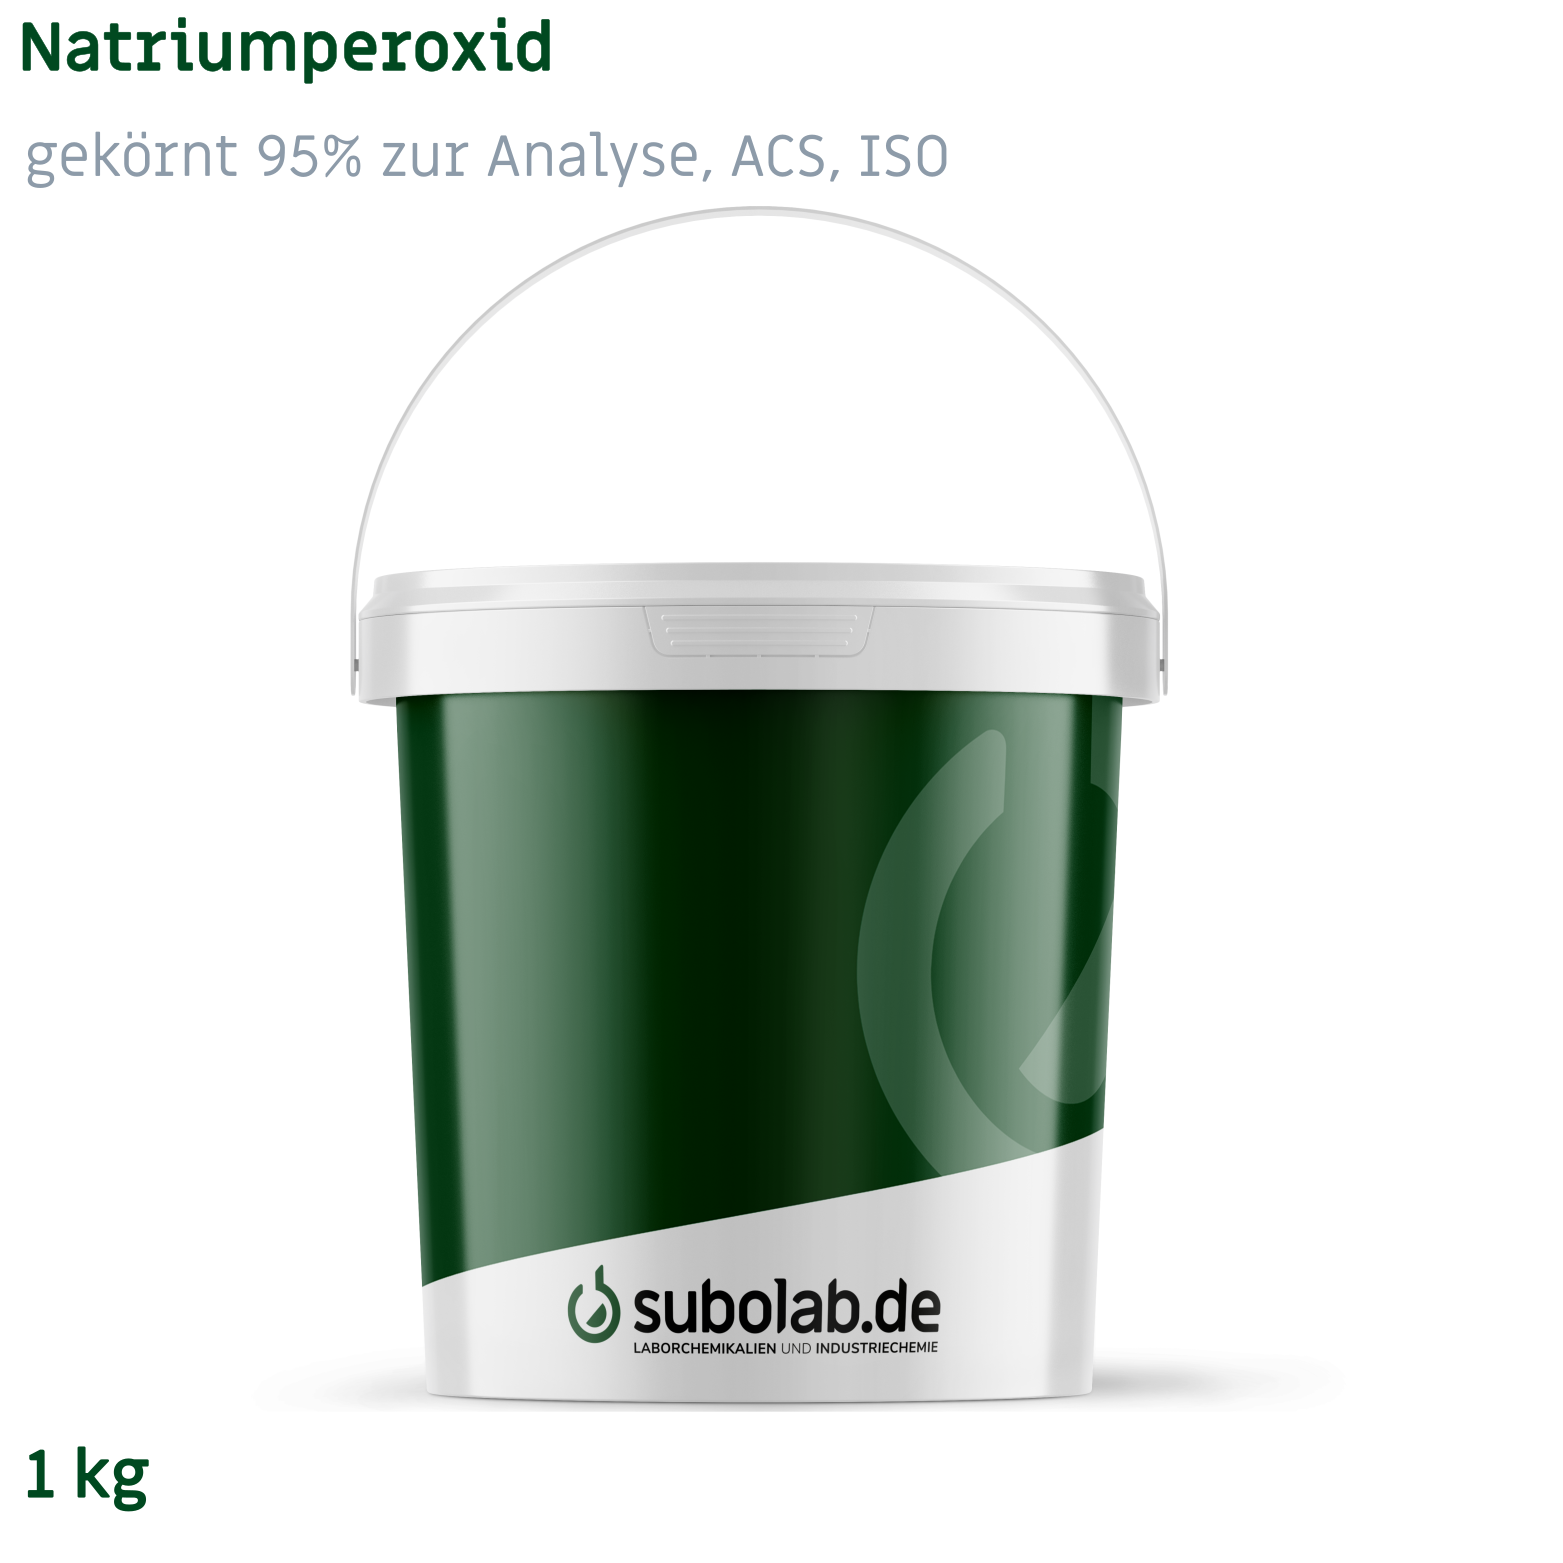 Bild von Natriumperoxid - gekörnt 95% zur Analyse, ACS, ISO (1 kg)